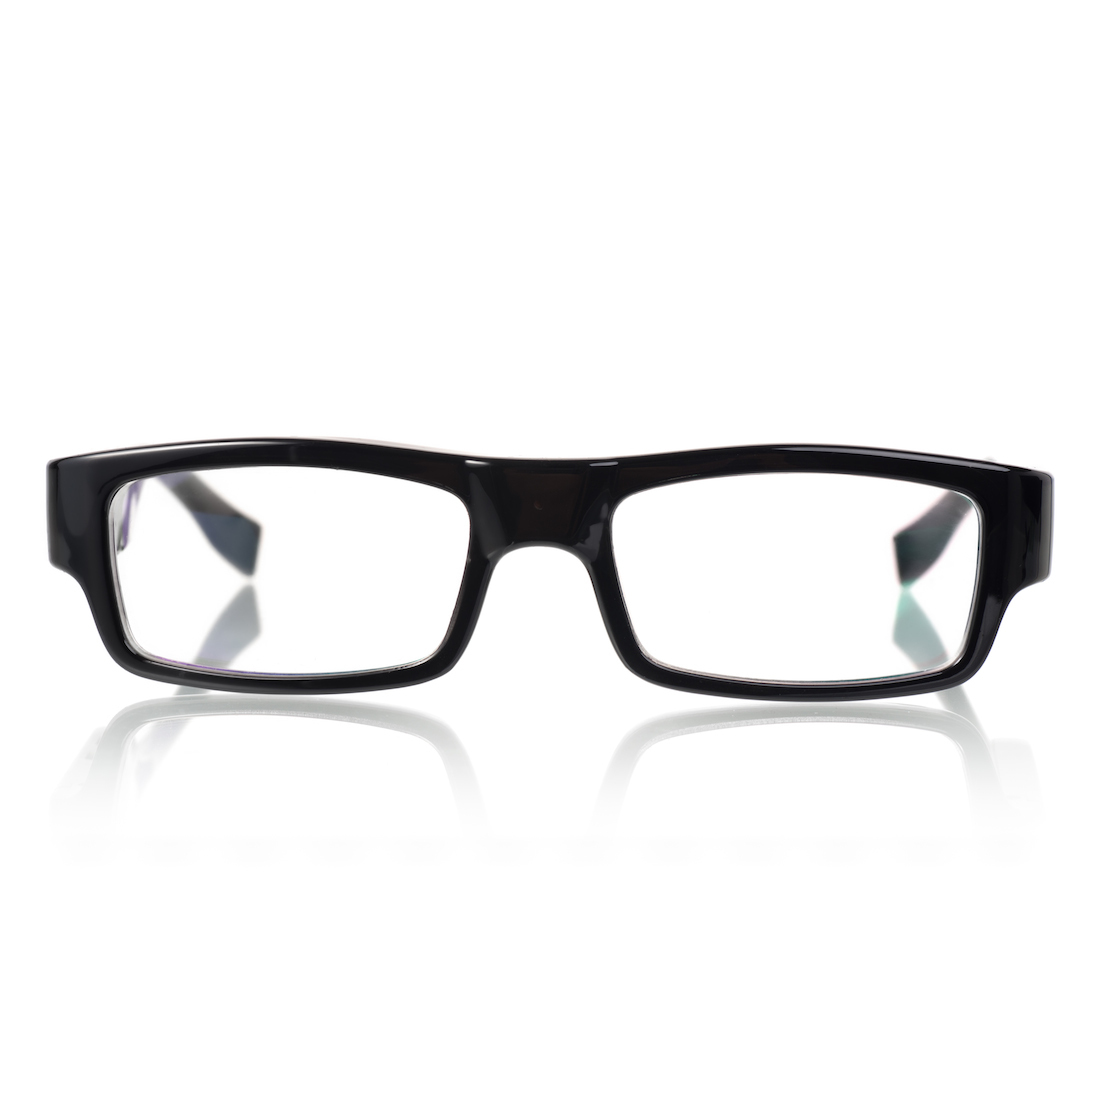 720p eyeglass hidden Spy camera Video 